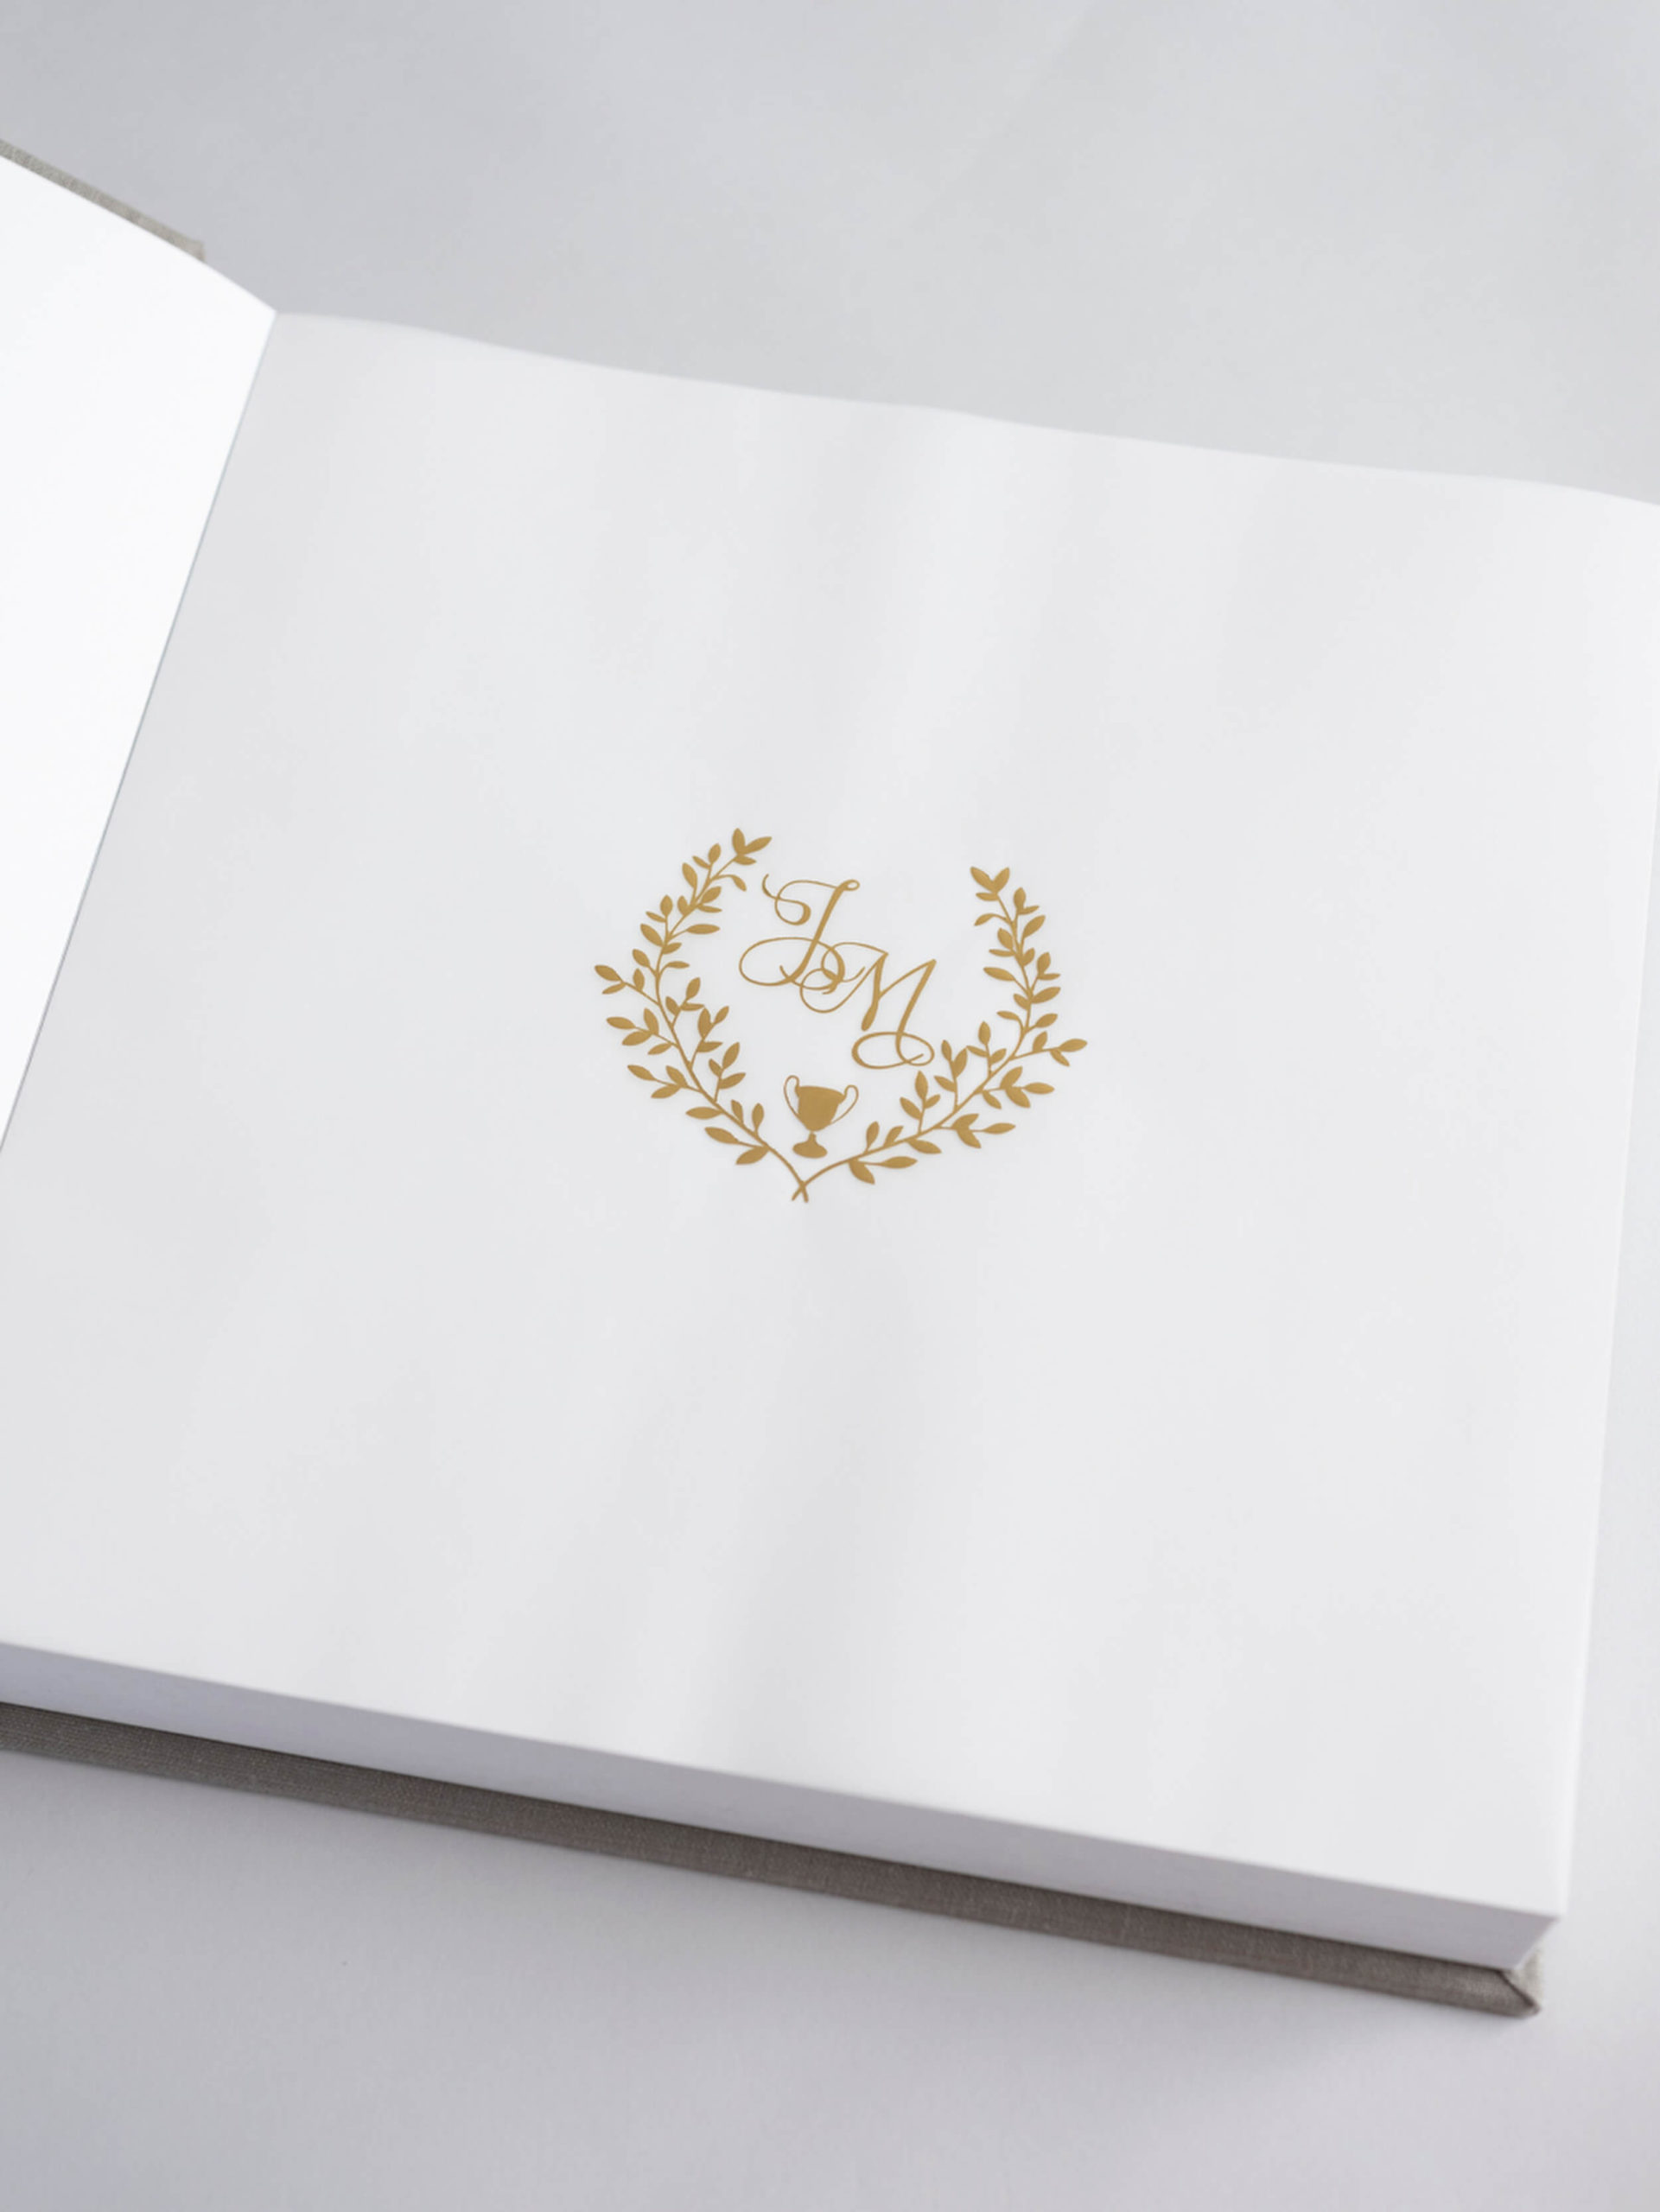 custom monogram in wedding album